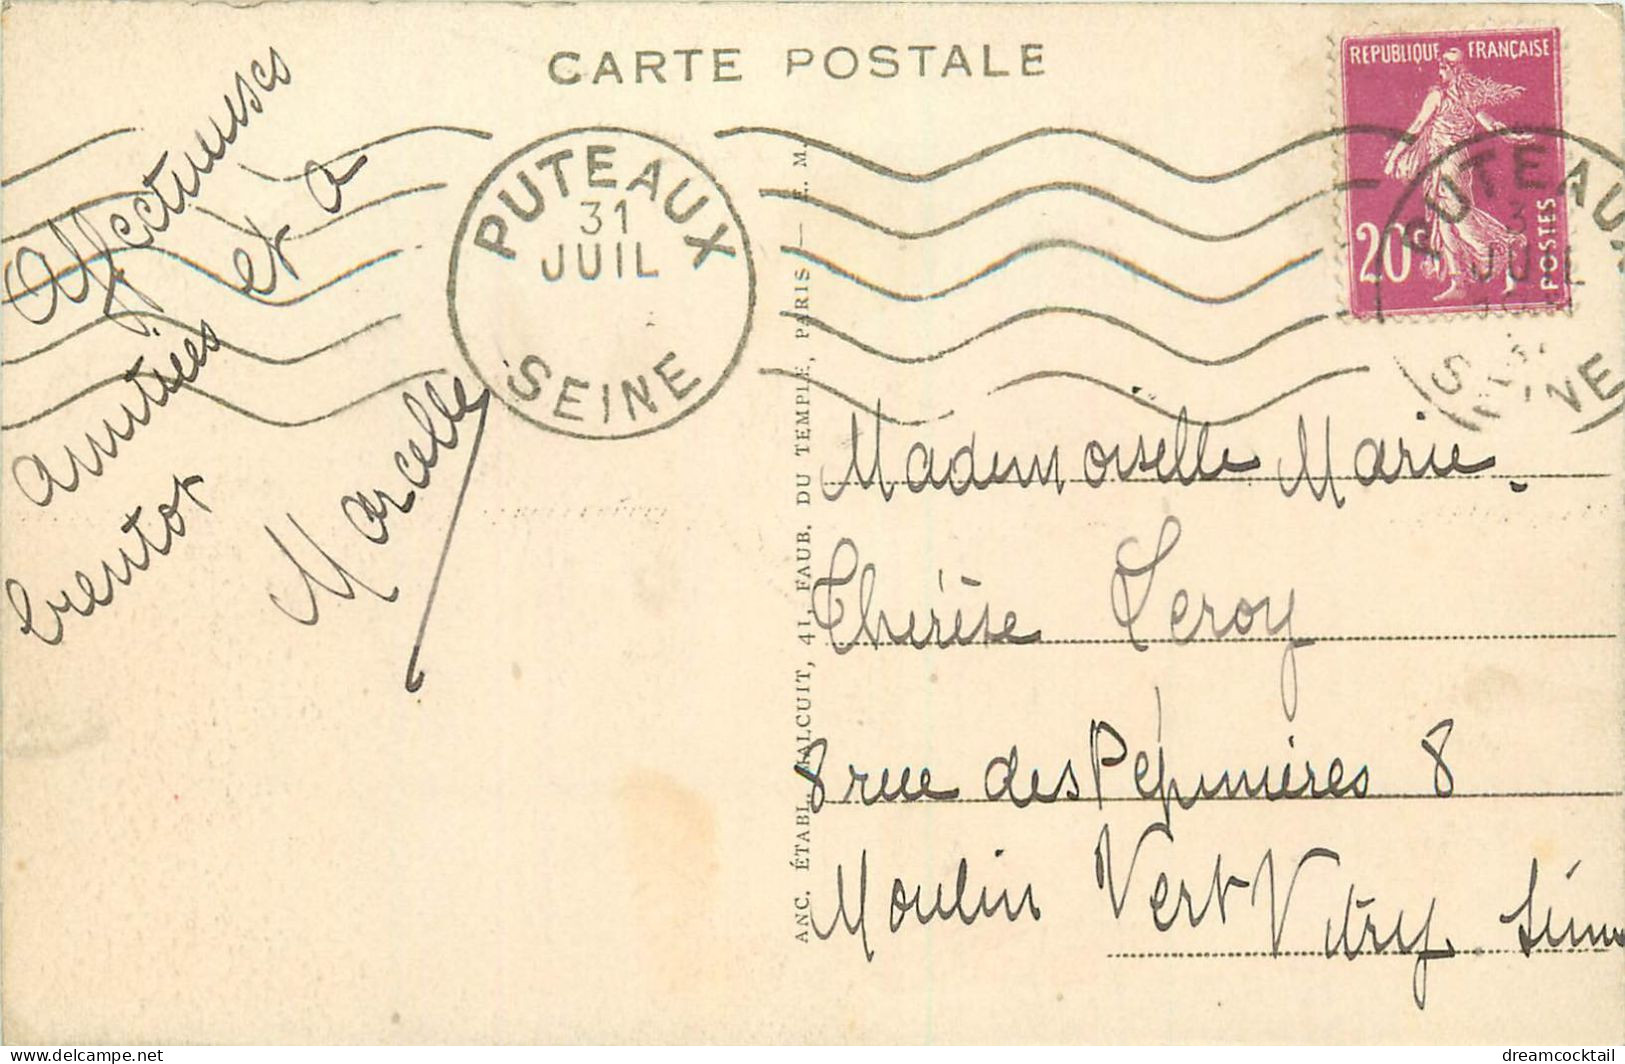 (S) Superbe LOT n°14 de 50 cartes postales anciennes sur toute la France